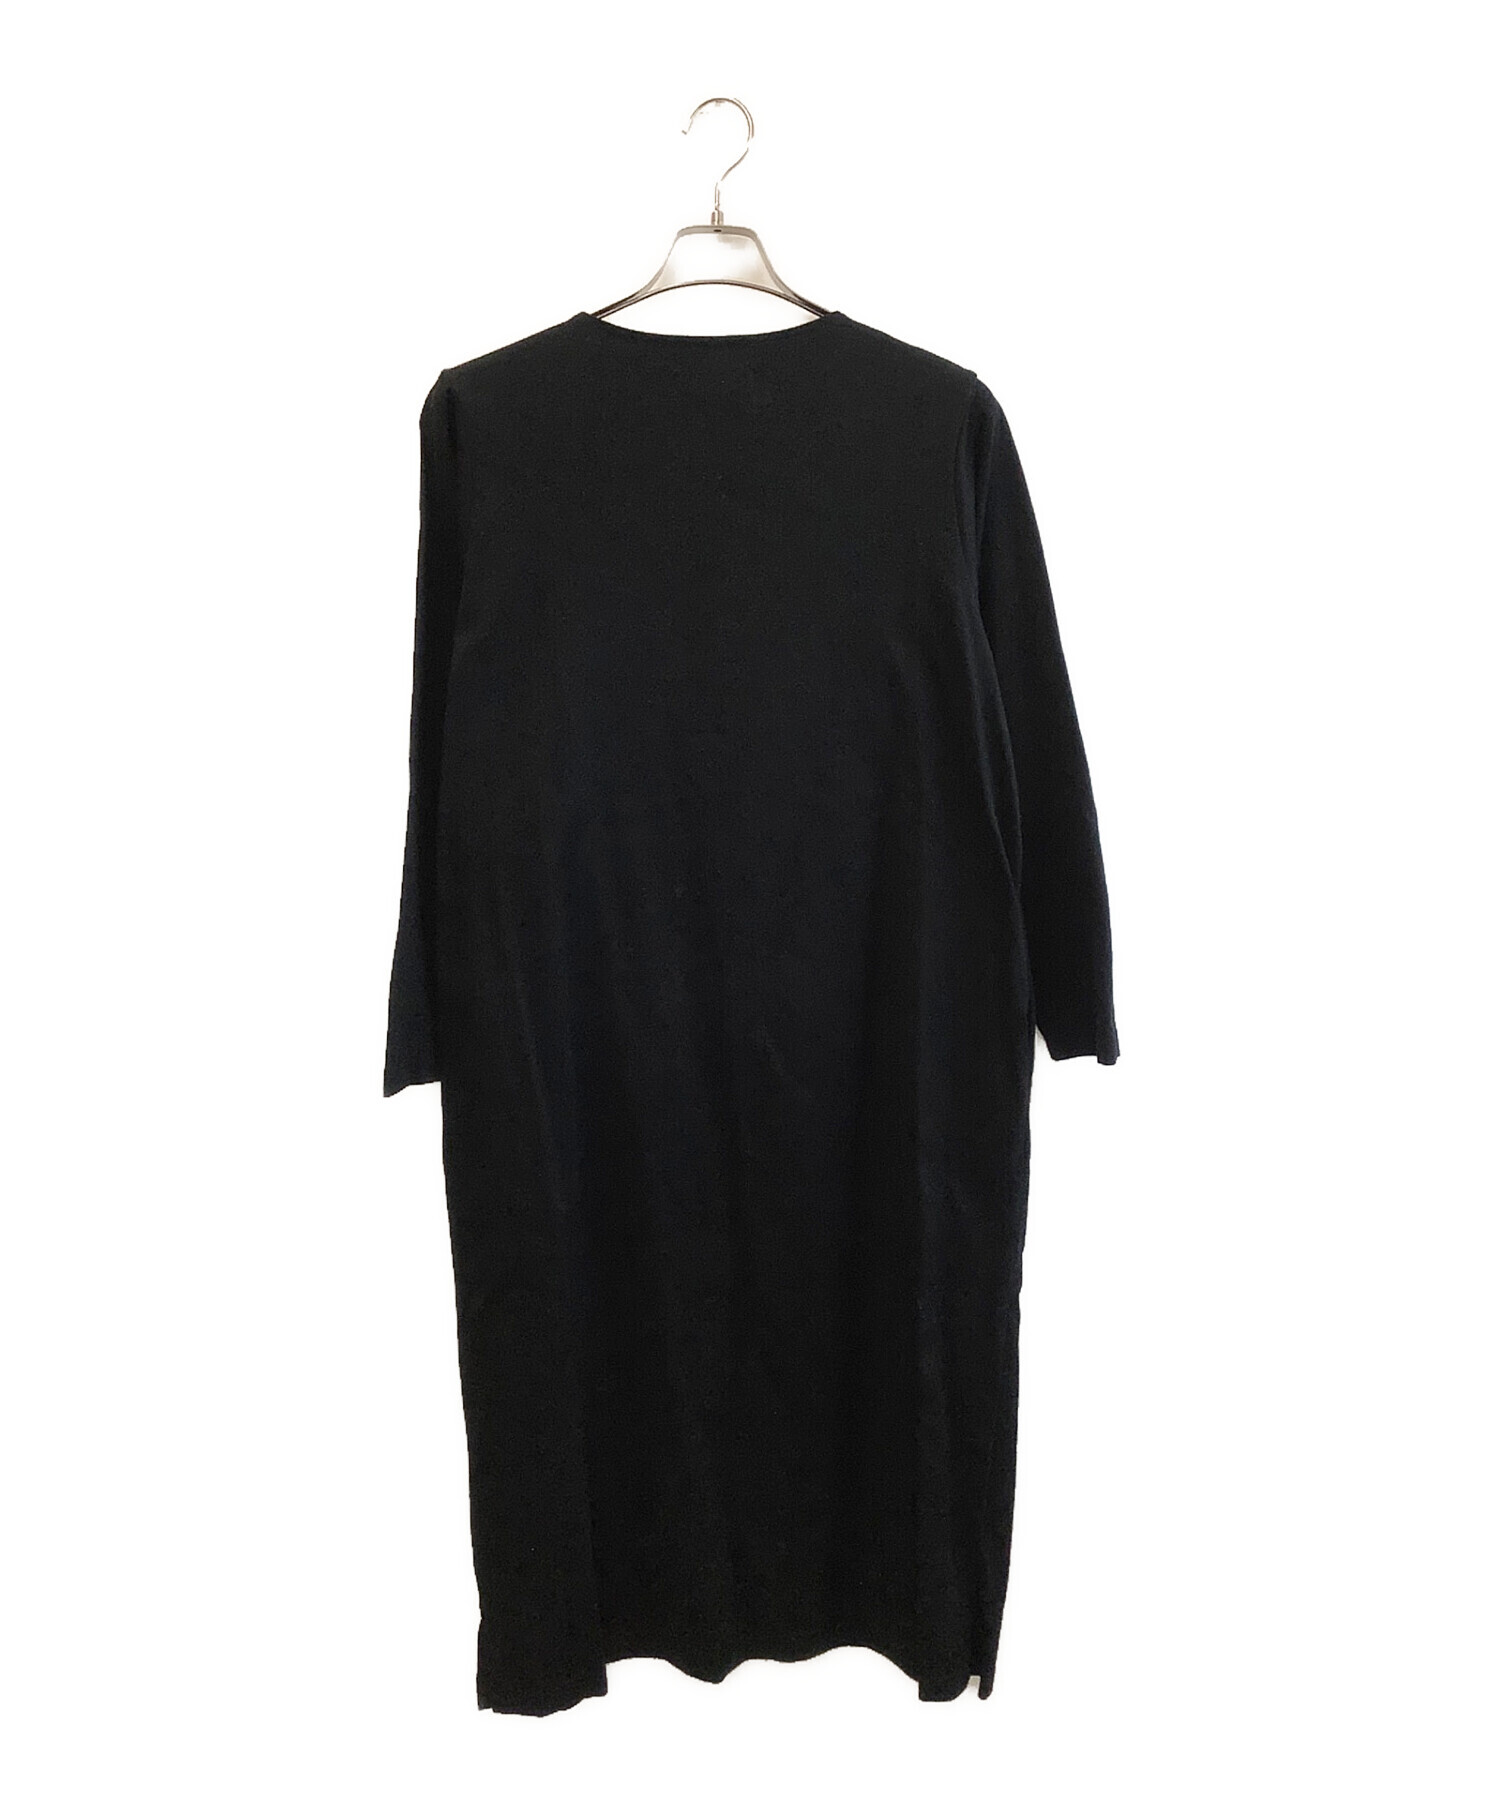 LACOSTE (ラコステ) ボートネック ドレス ワンポイント コットンワンピース ブラック サイズ:38